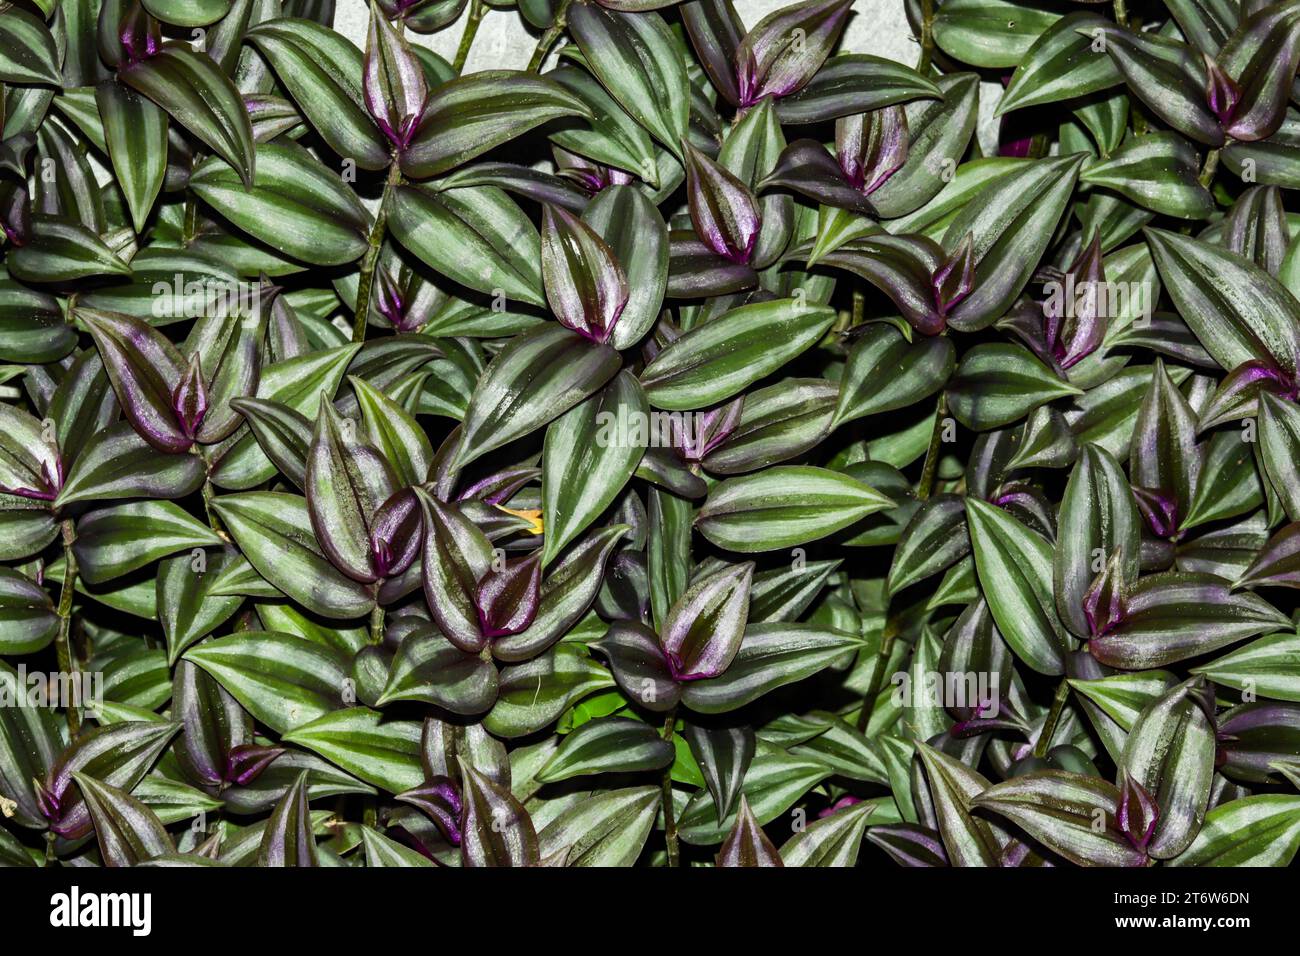 La plante Silver-inch est une plante traînante populaire, avec des rayures vertes et violettes ressemblant au zèbre Banque D'Images